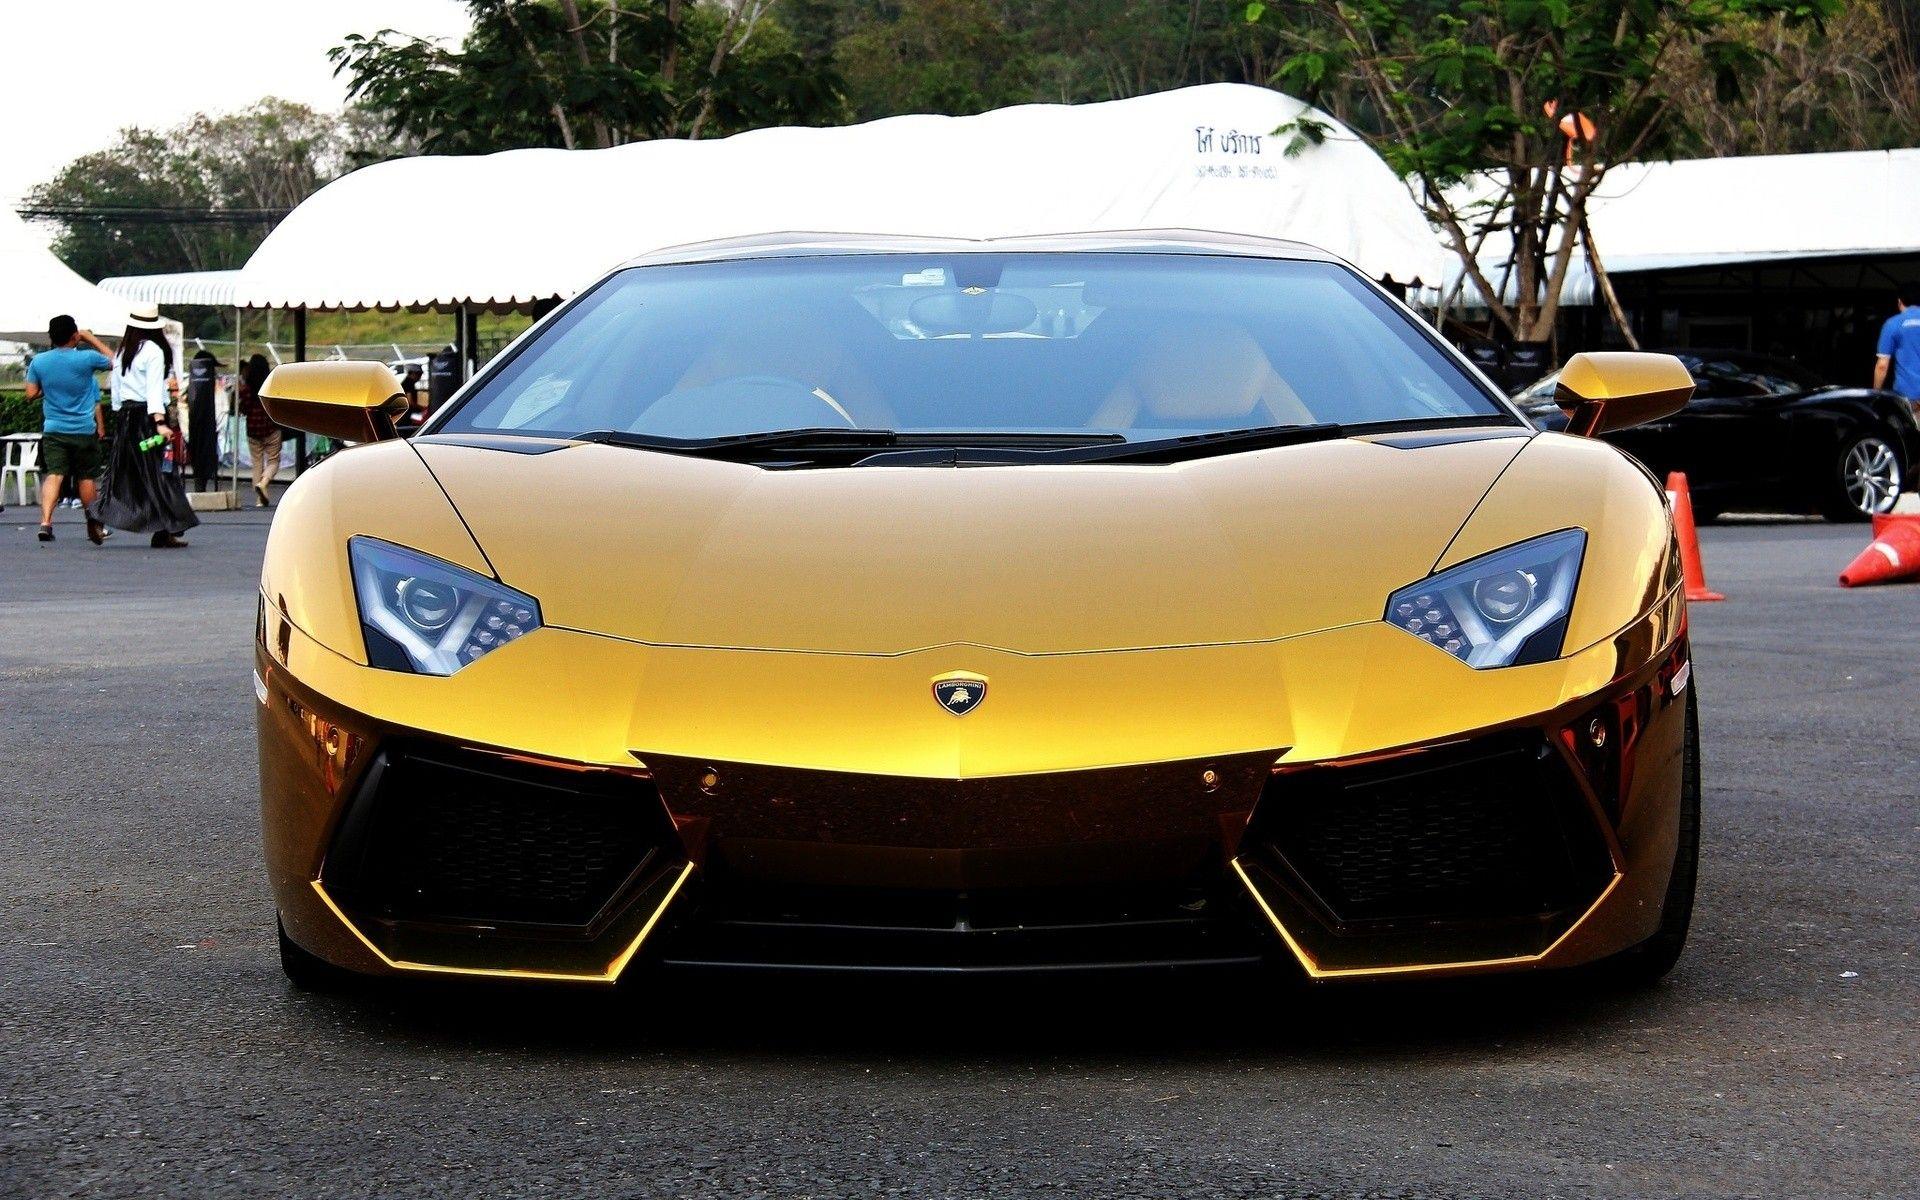 Lamborghini, Car, Gold, India Wallpaper HD / Desktop and Mobile